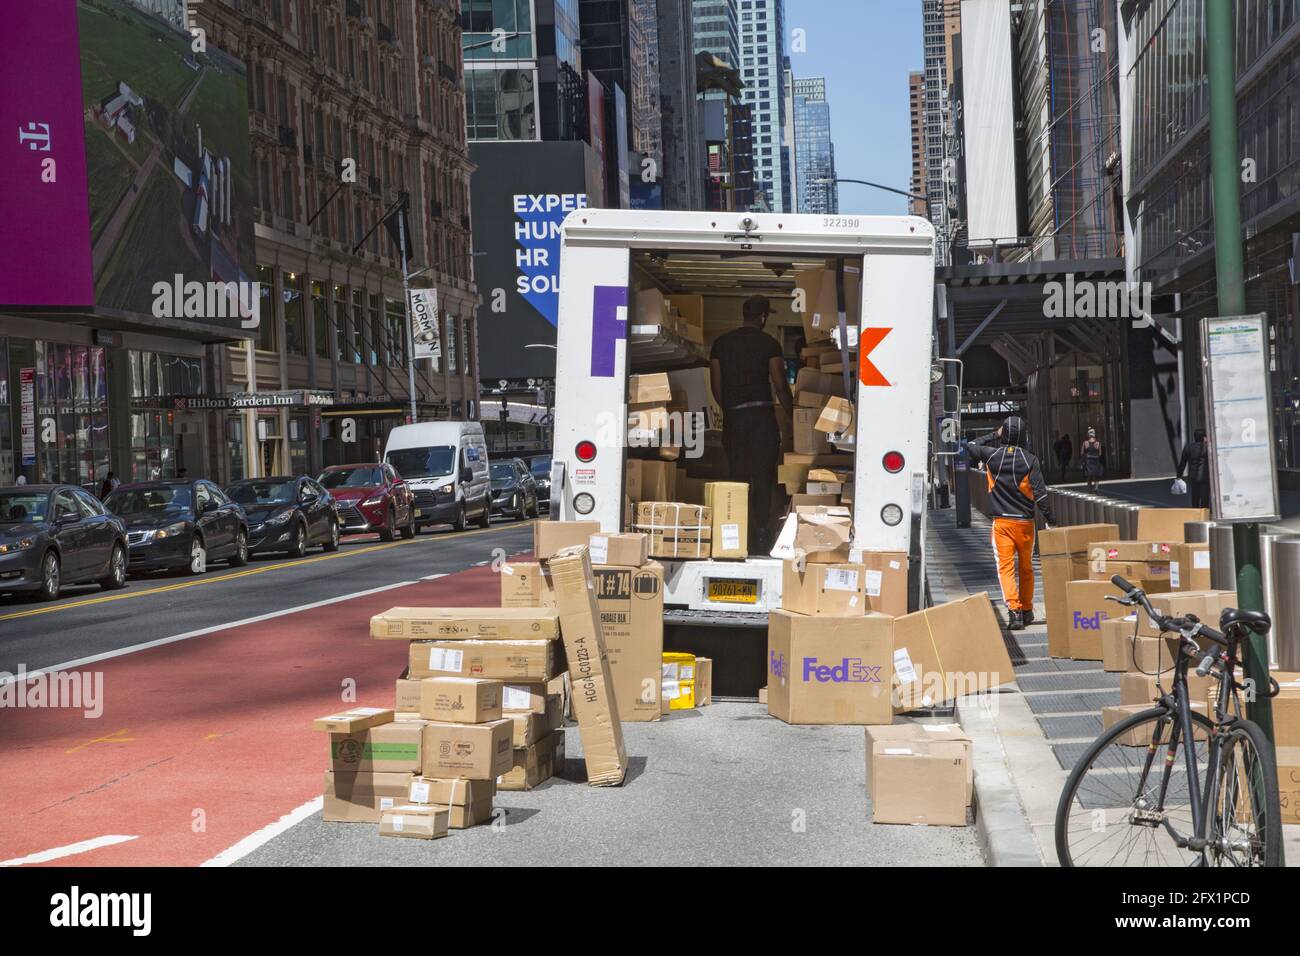 FedEx deliveryman come gli altri principali servizi di consegna è così occupato in questi giorni a causa della chiusura Covid-19 che ha bisogno di utilizzare la strada per risolvere i numerosi pacchetti che ha per la consegna, qui nel centro di Manhattan, New York. Foto Stock